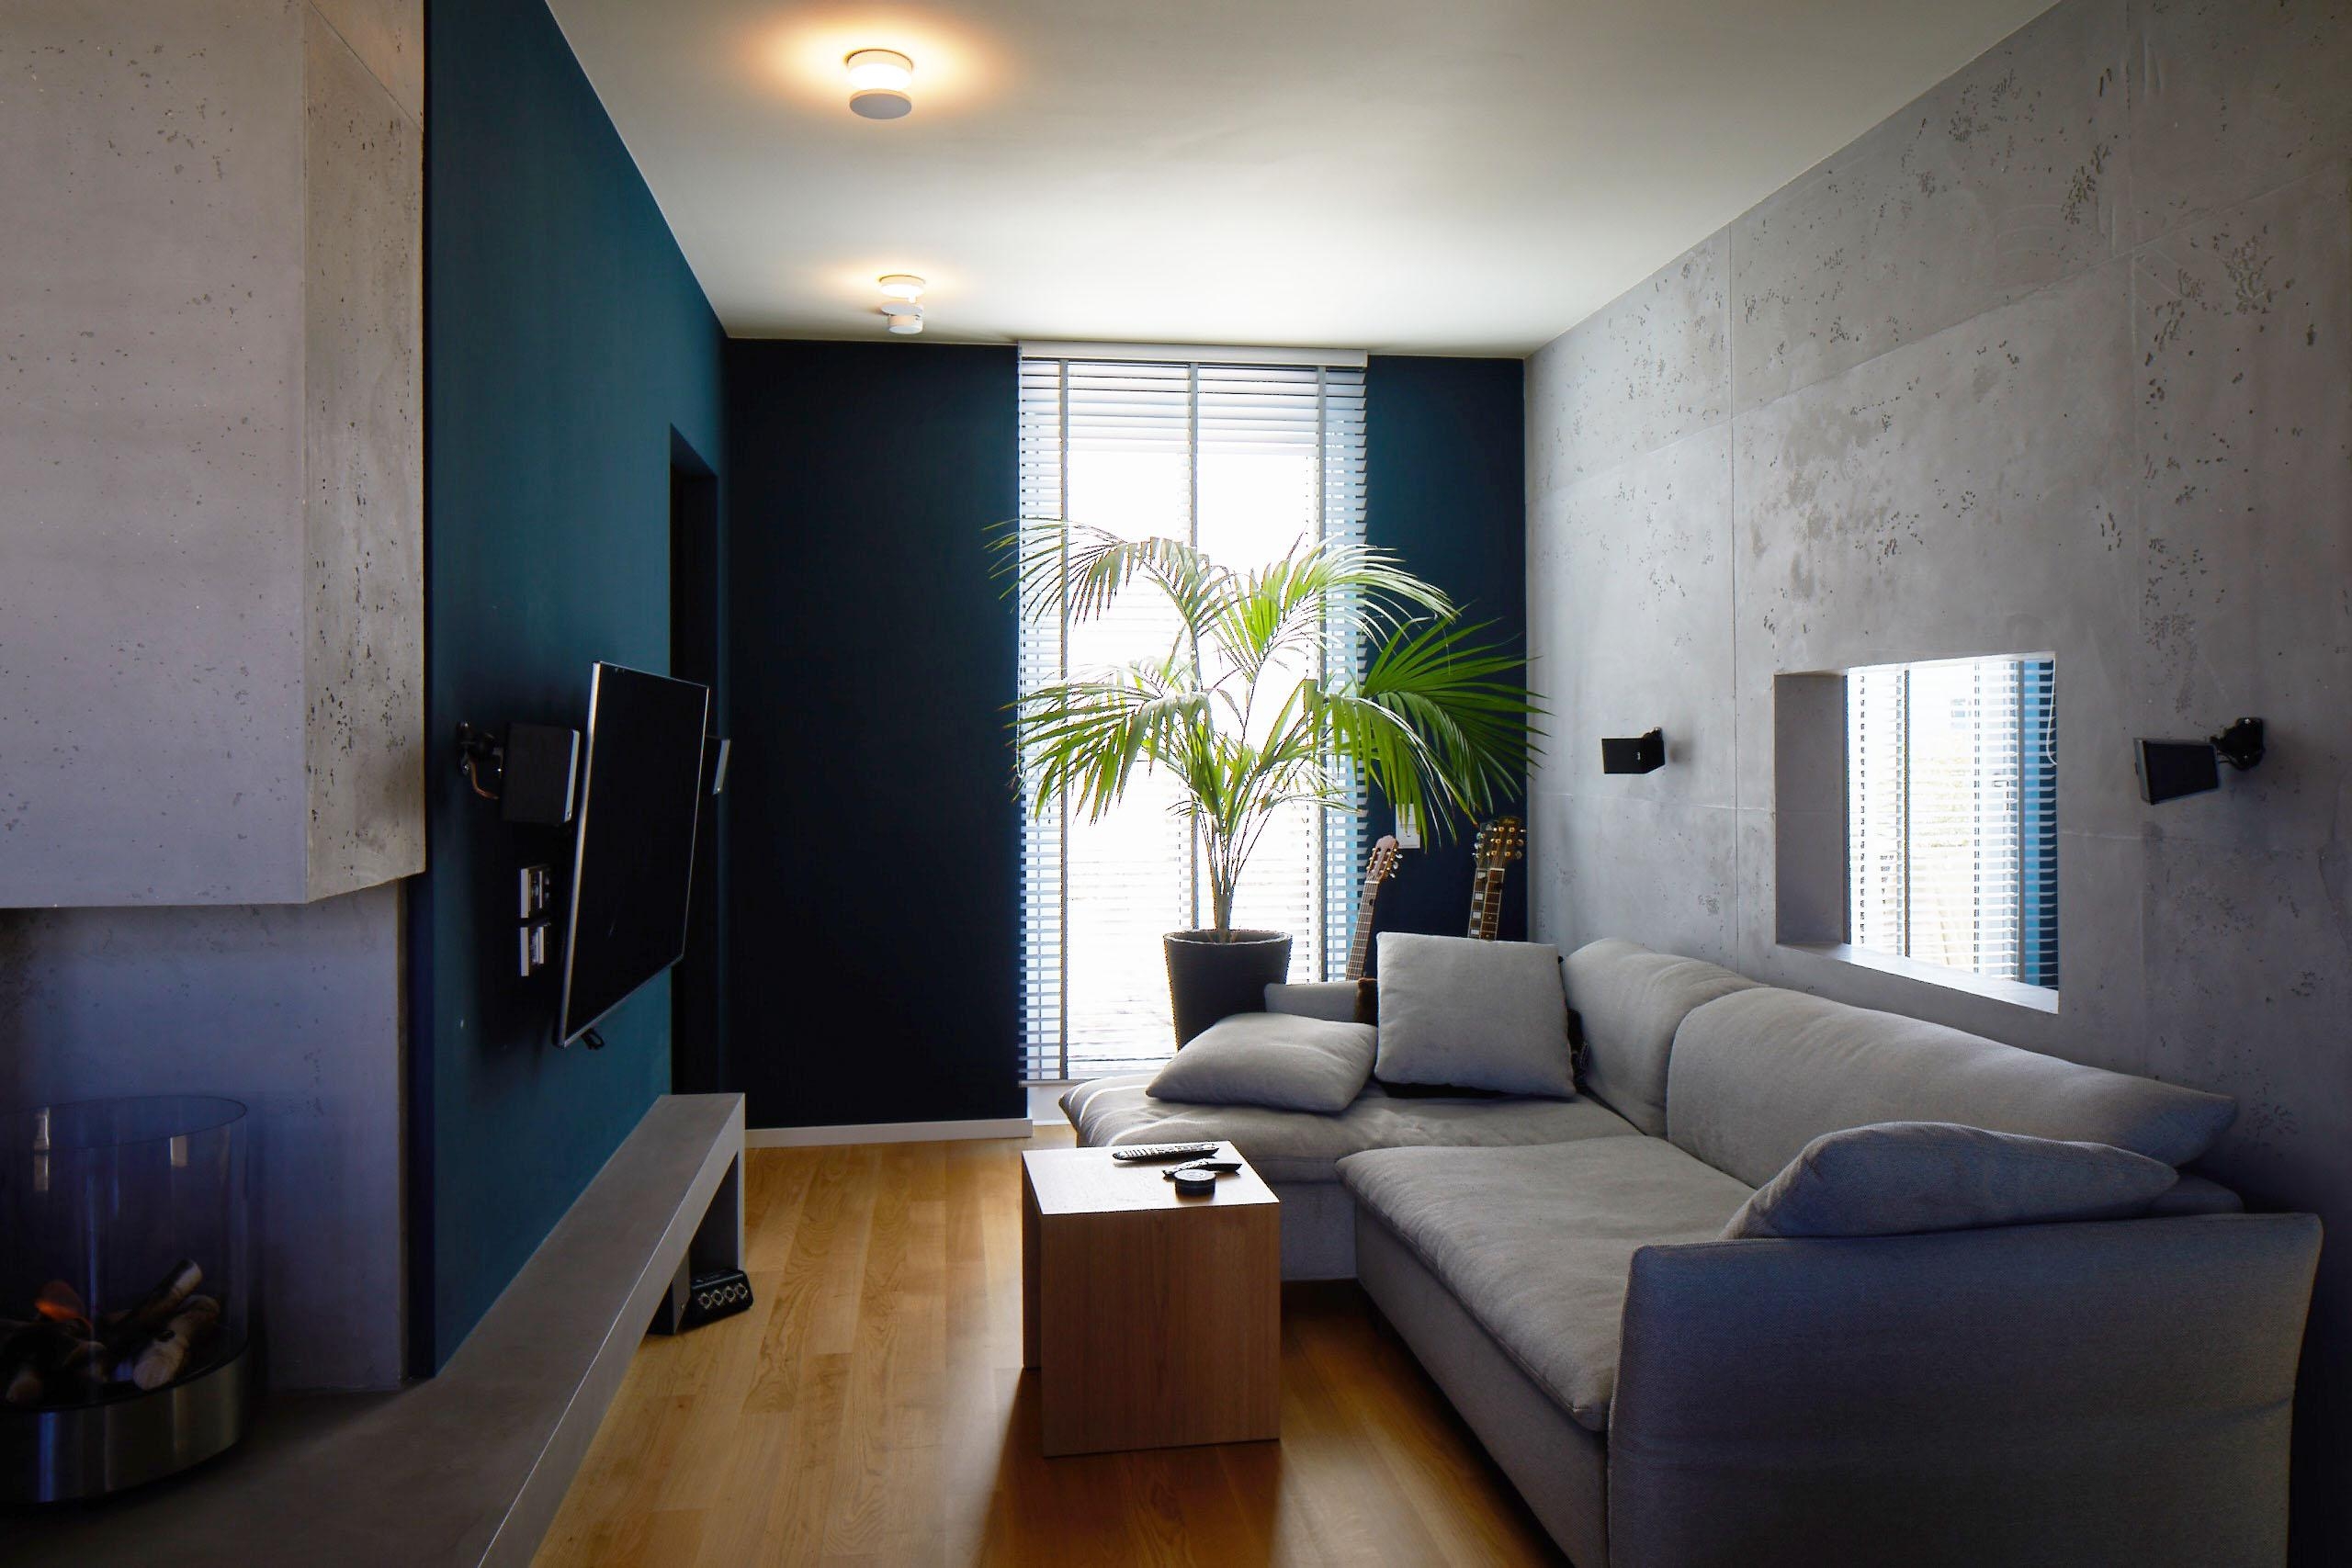 wandgestaltung wohnzimmer betonoptik interiordesign concretedesign loftstyle